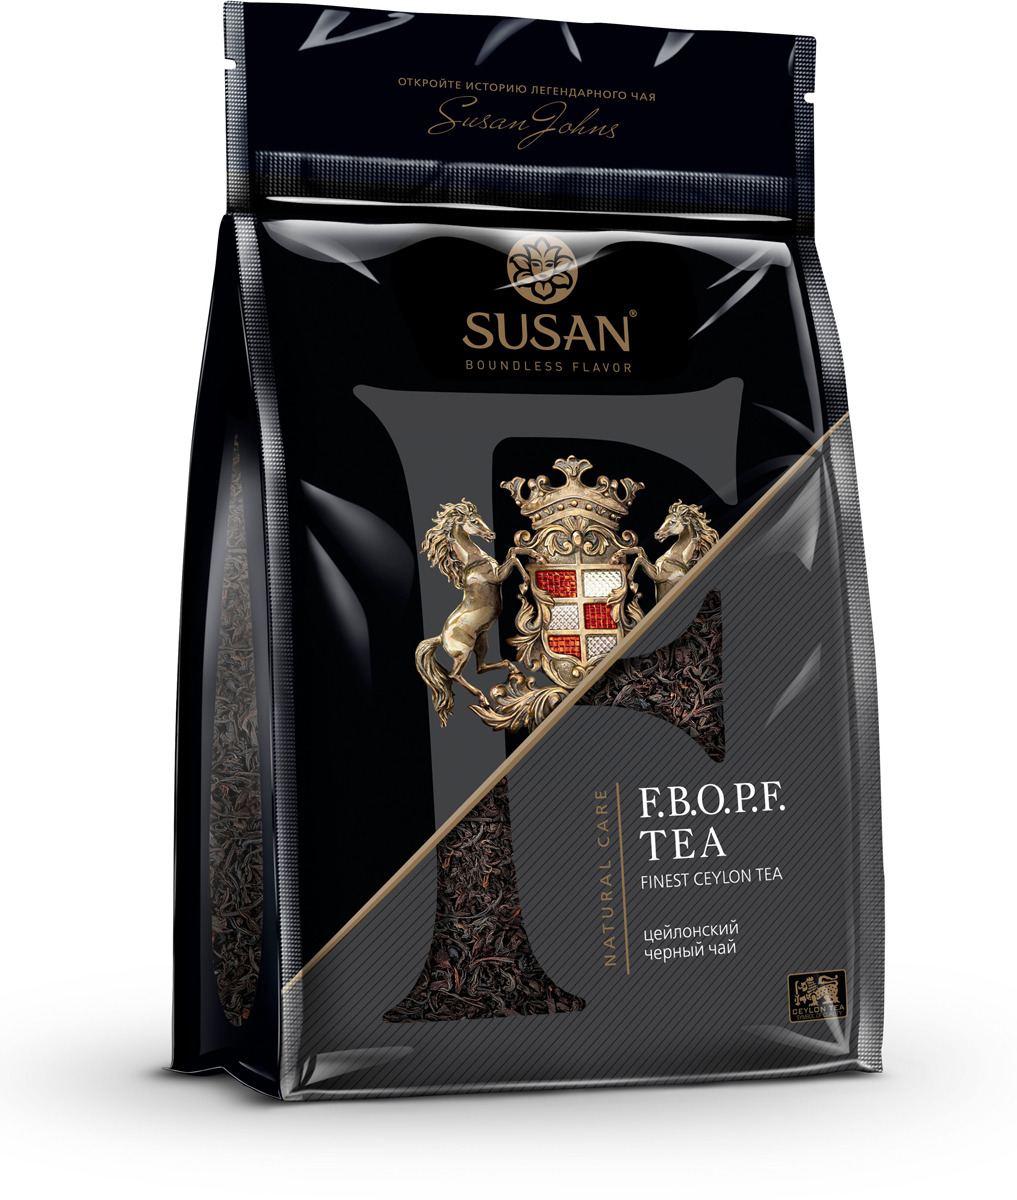 фото Черный чай Susan, листовой с типсами сорта F.B.O.P.F., 200 г